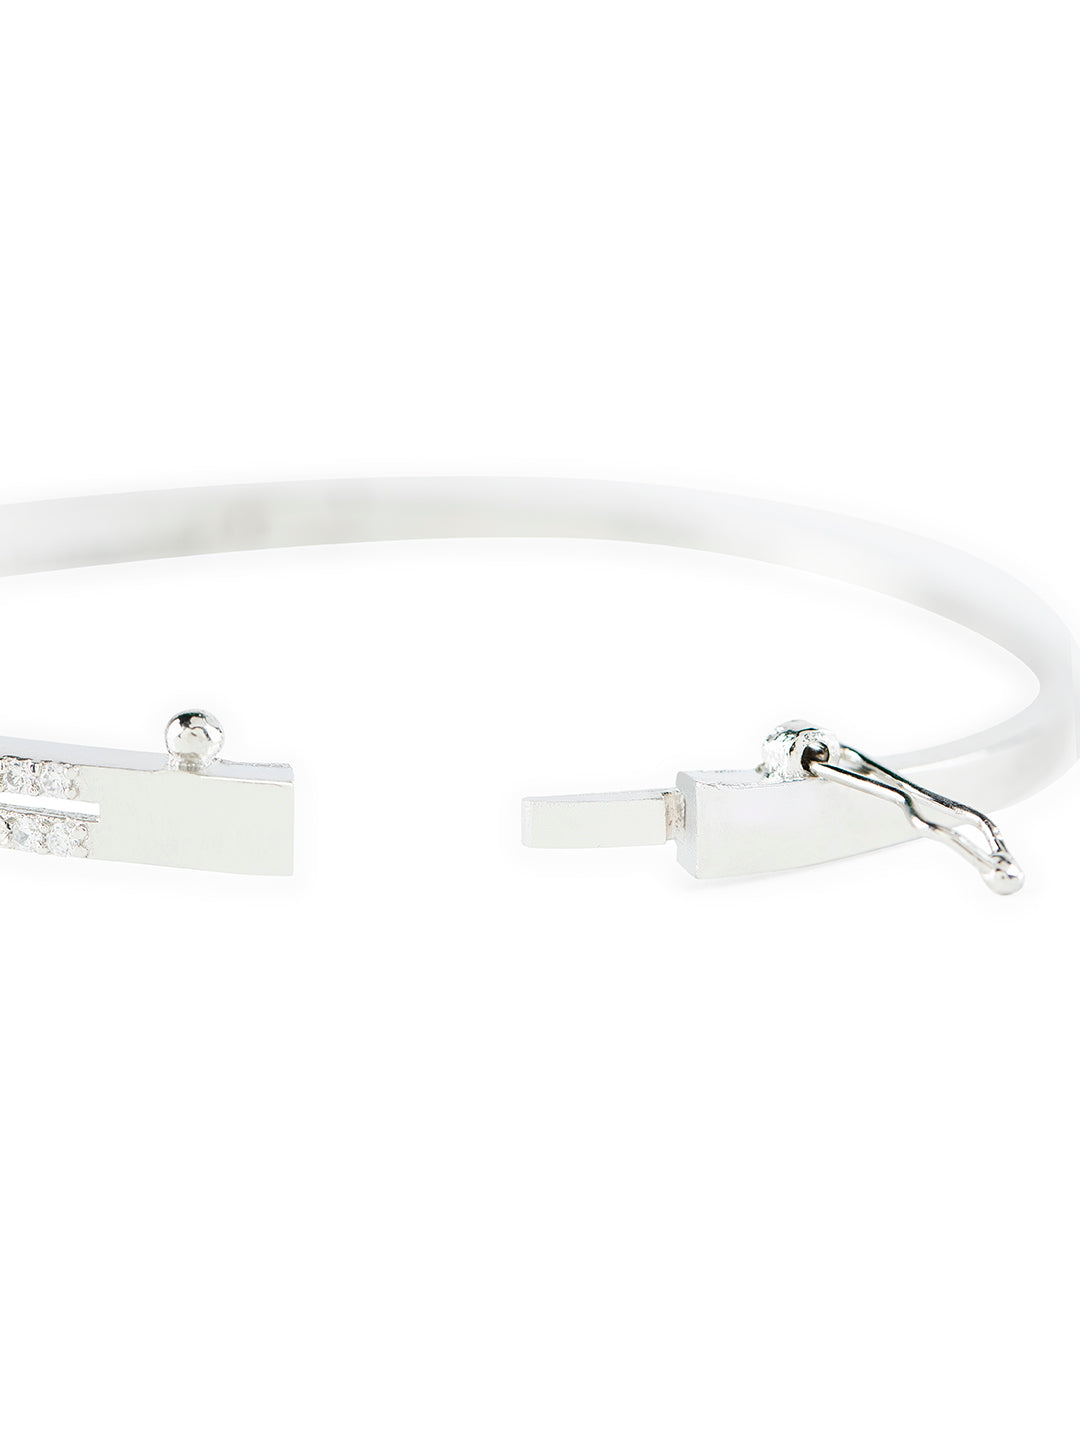 Stunning Vine Design AD Silver-Plated Bracelet